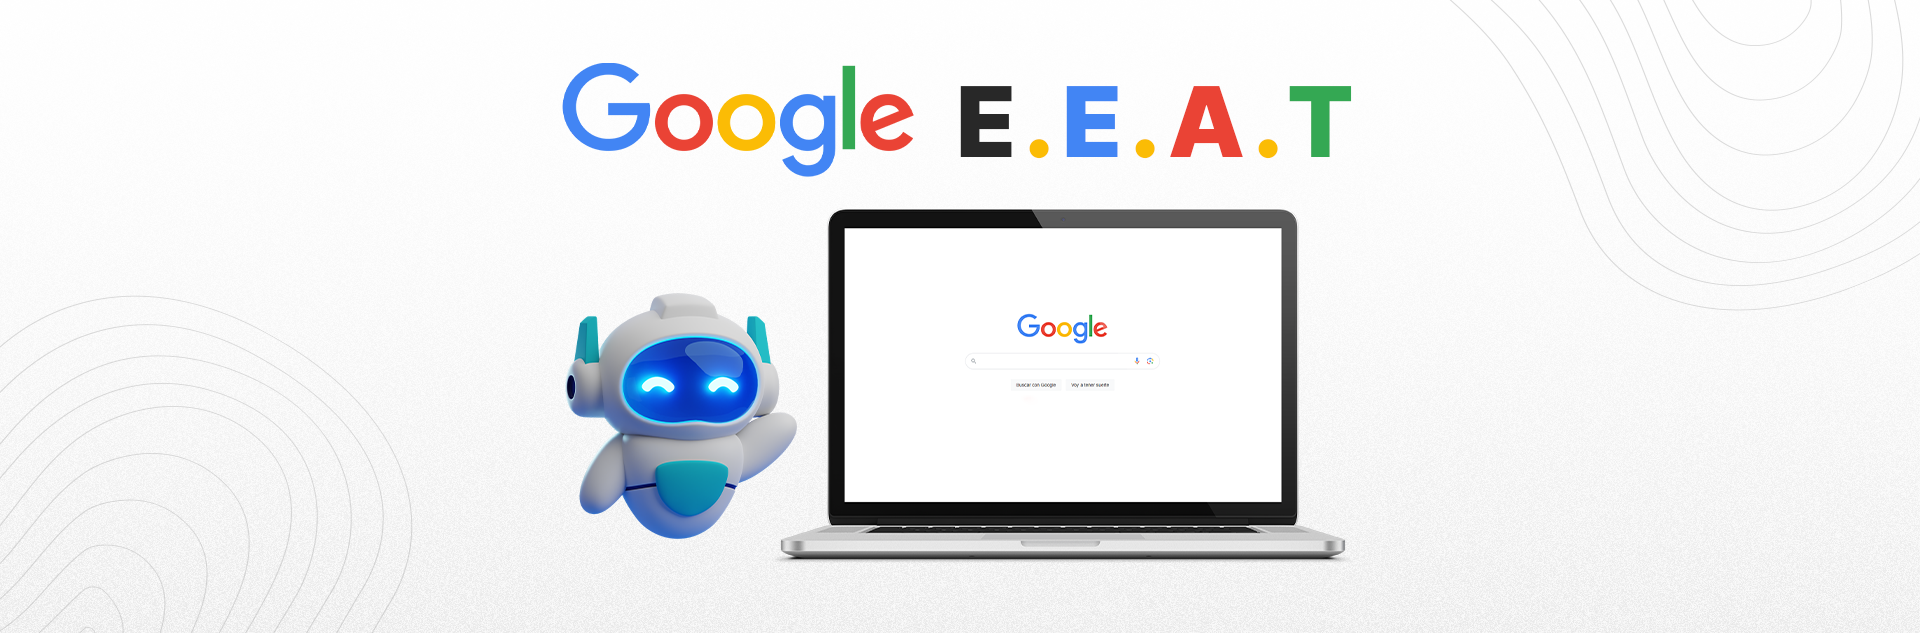 Aprende a Implementar Google EEAT en SEO paso a paso para tu sitio web y sácale el máximo provecho